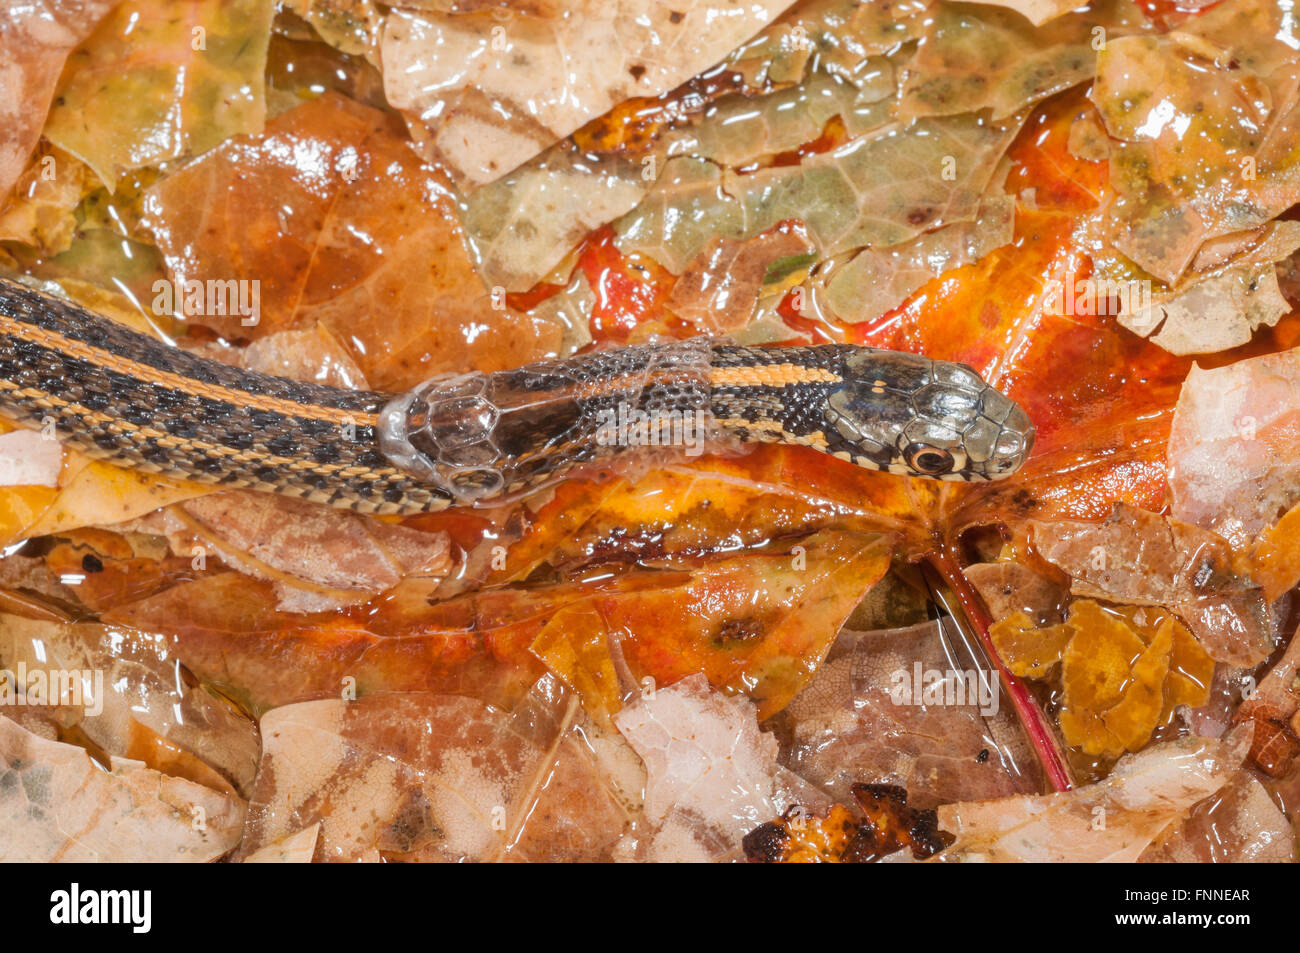 Llanuras Garter Snake, Thamnophis radix nativa; al Centro de Estados Unidos a Canadá Foto de stock